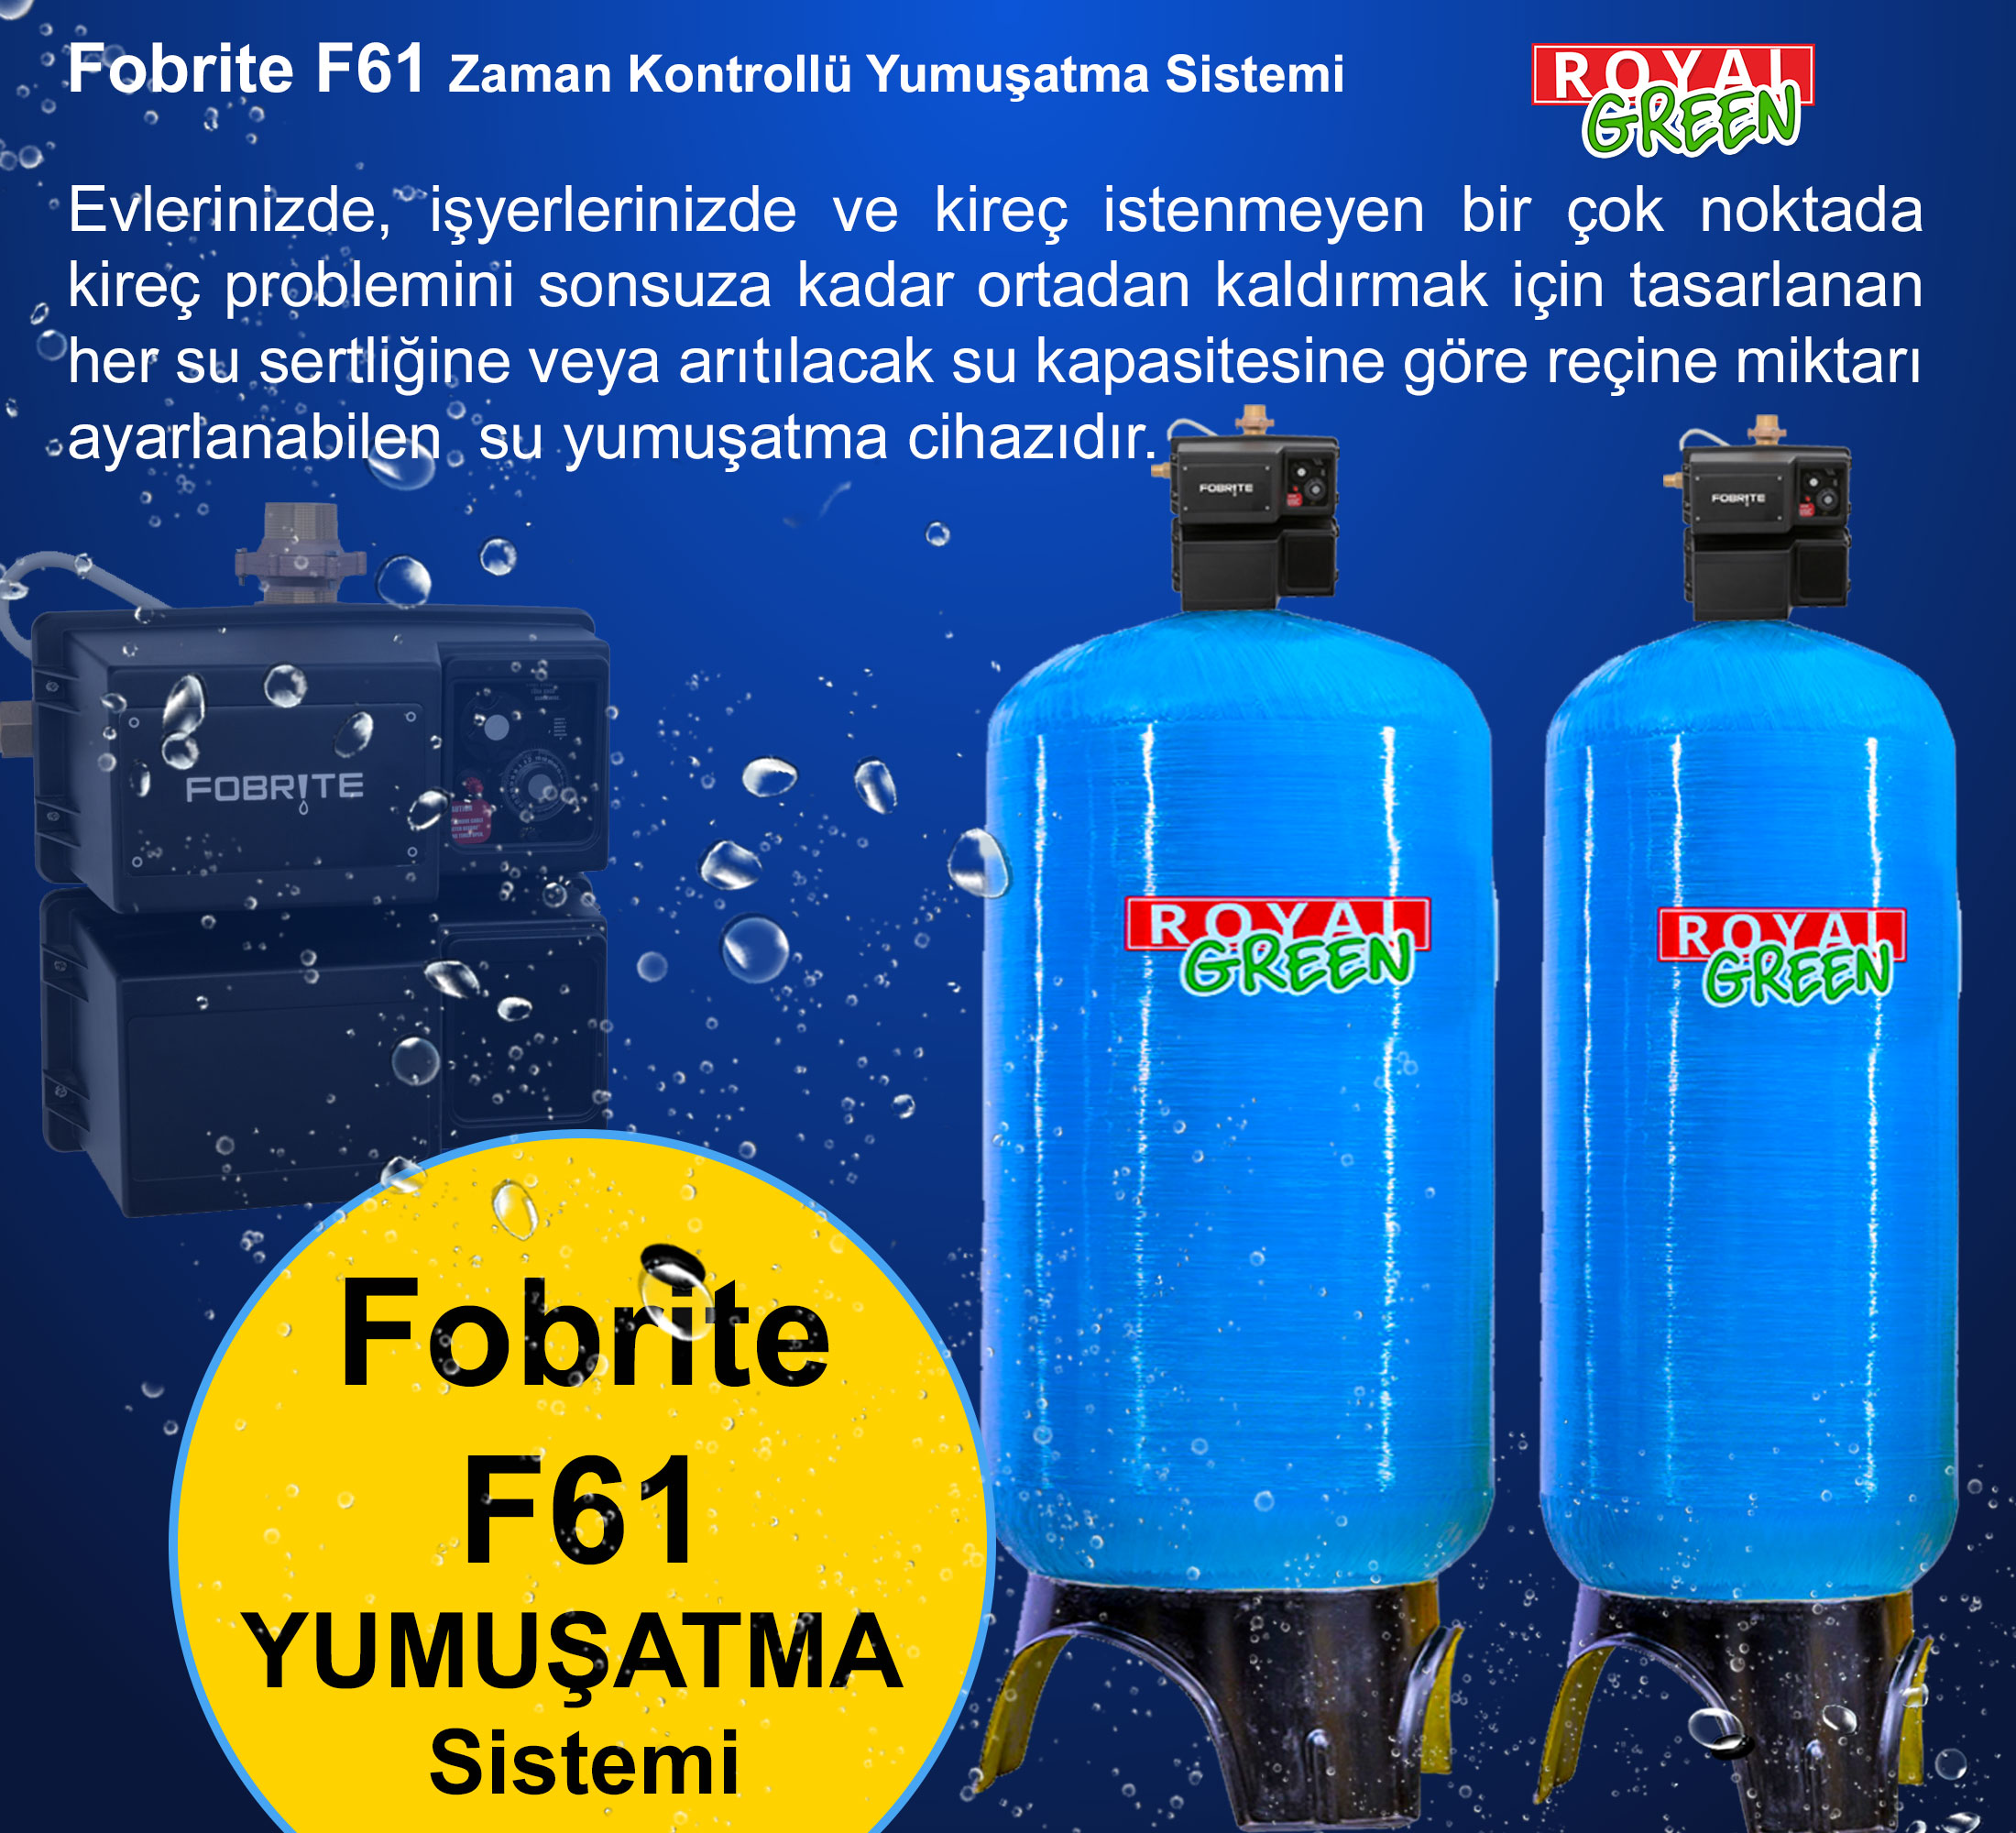 fobrite F61 yumusatma sistemi banner